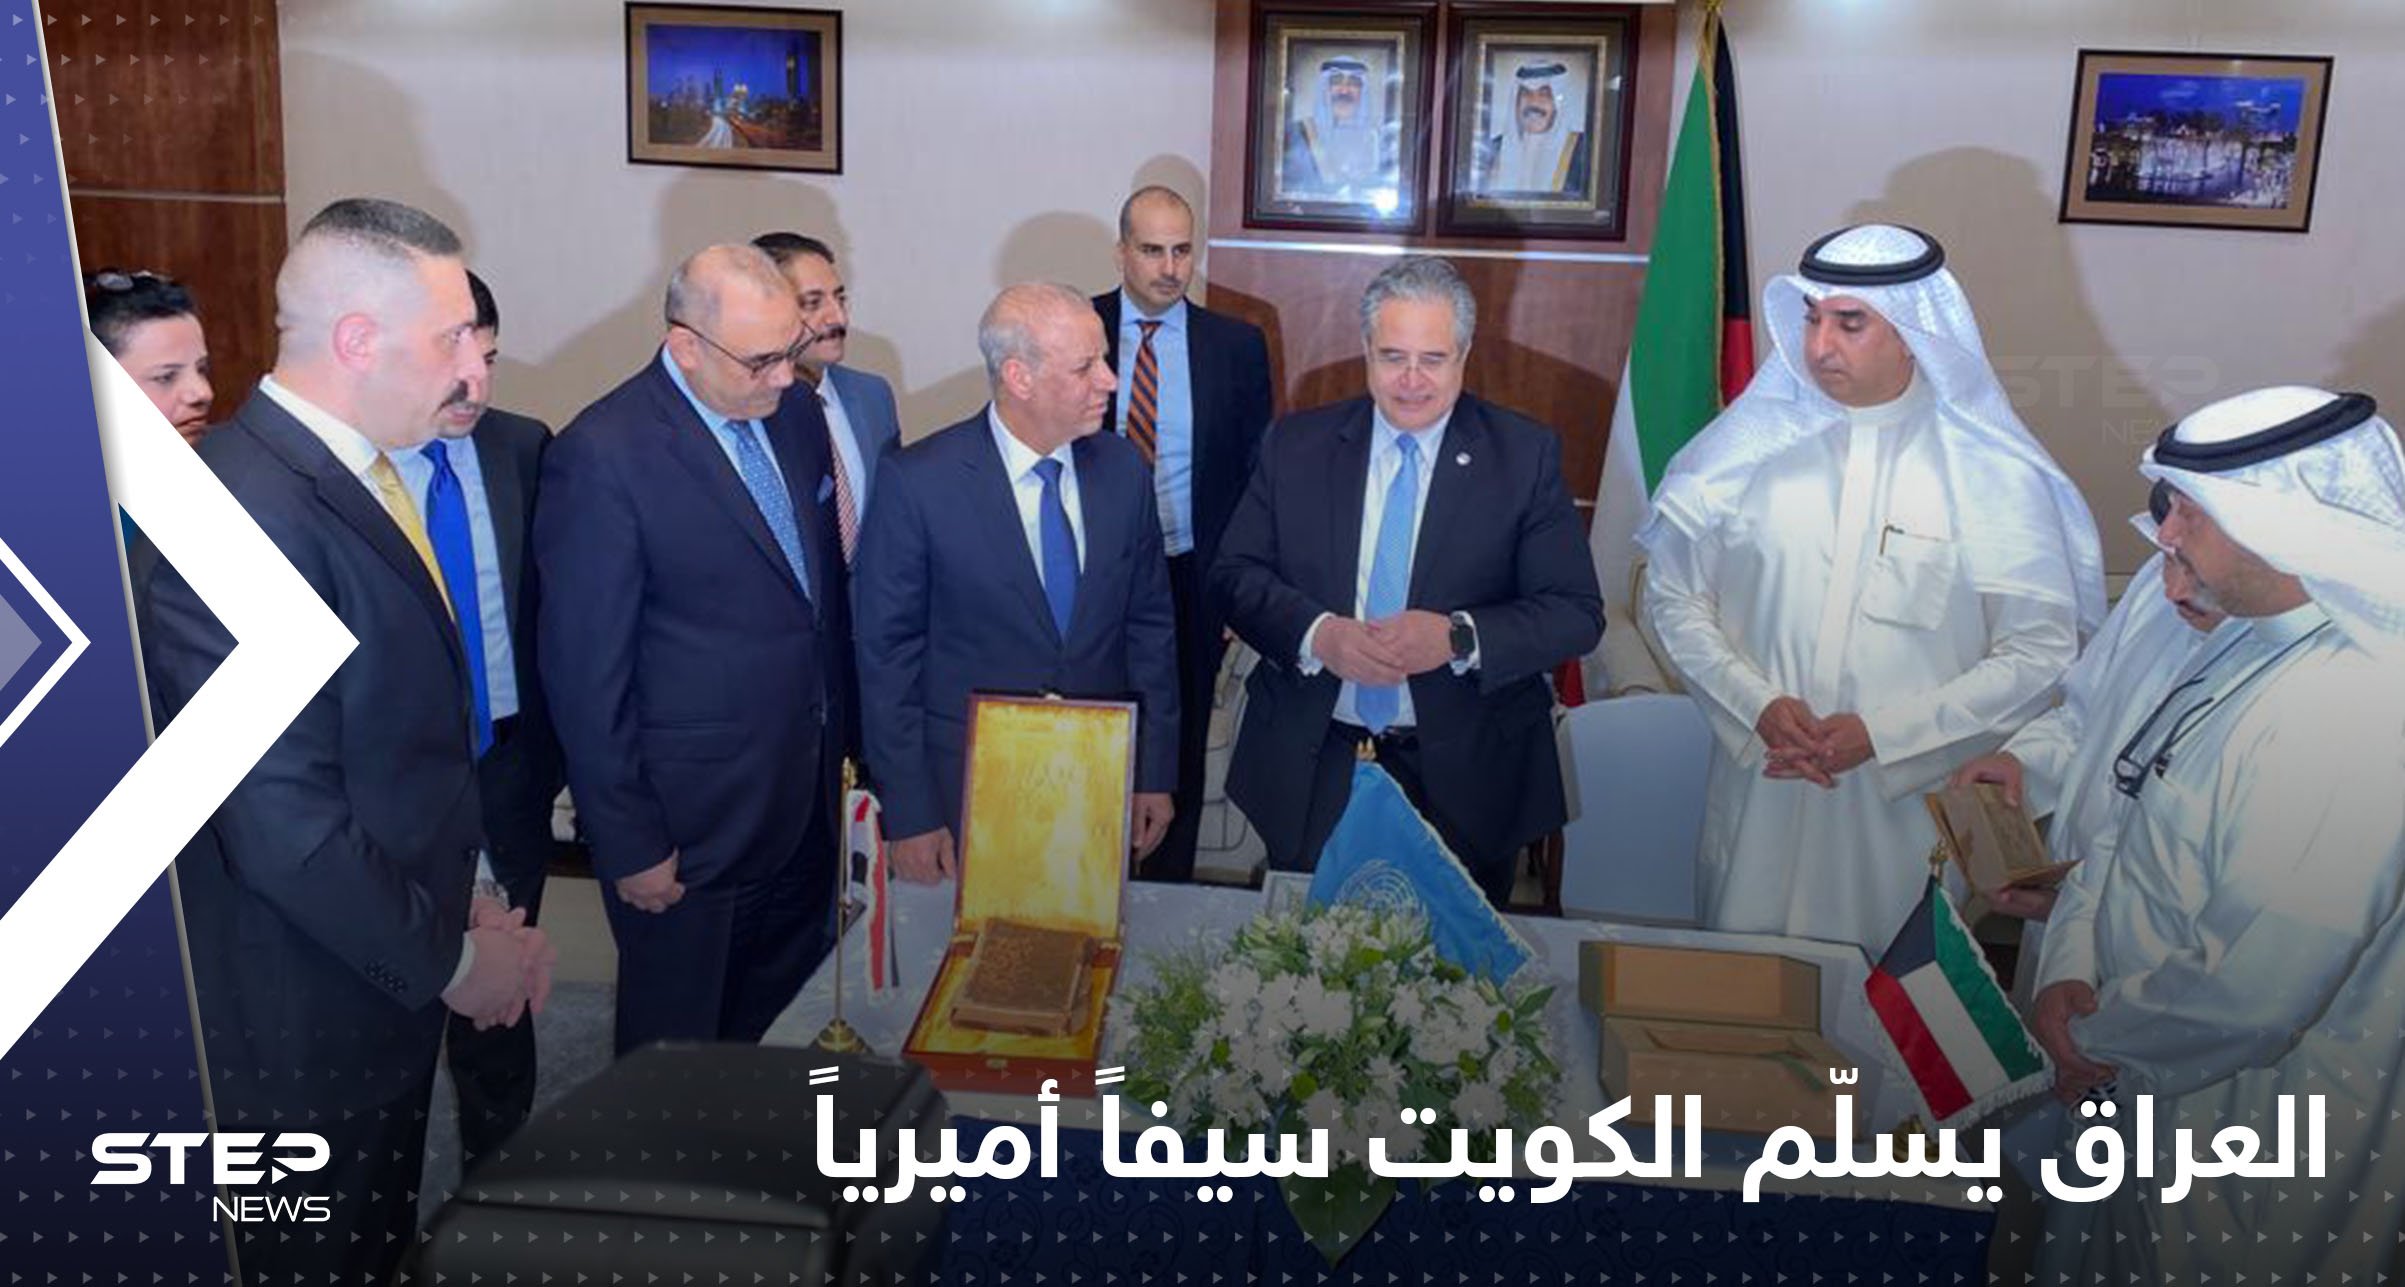 العراق يسلّم الكويت وثائق ومخطوطات استولى عليها نظام صدام حسين